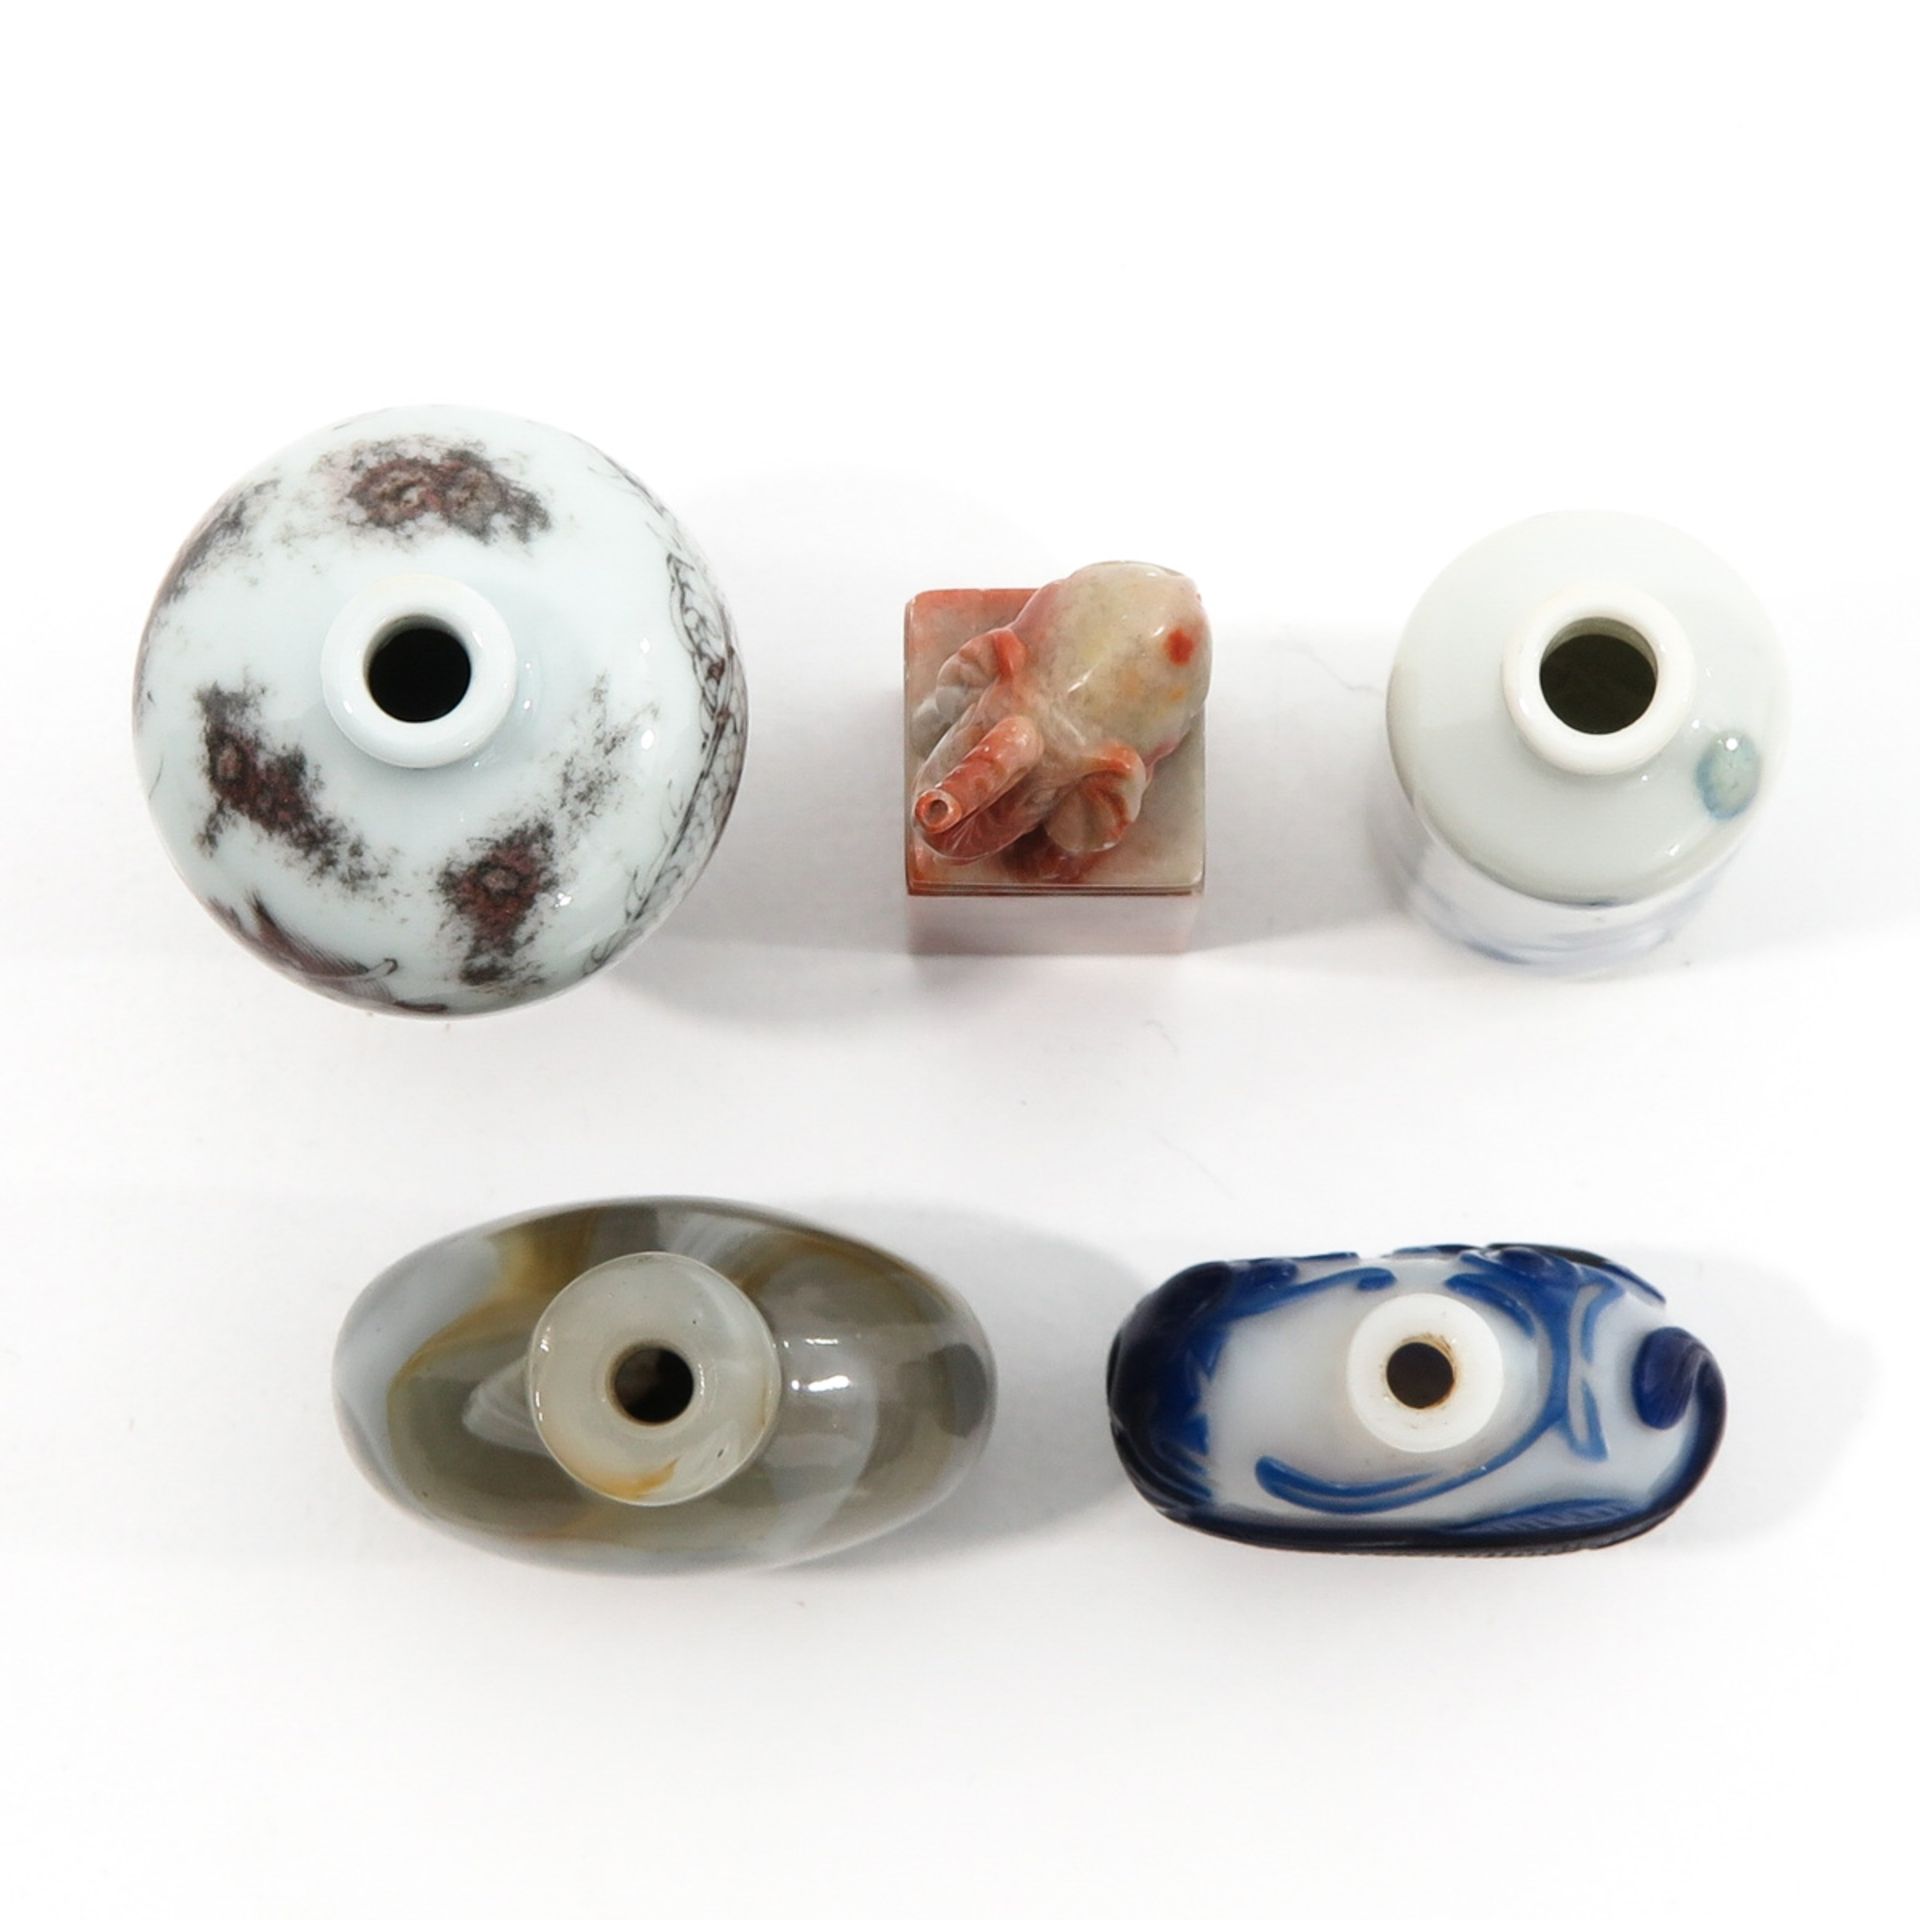 A Diverse Collection of Porcelain - Bild 5 aus 9